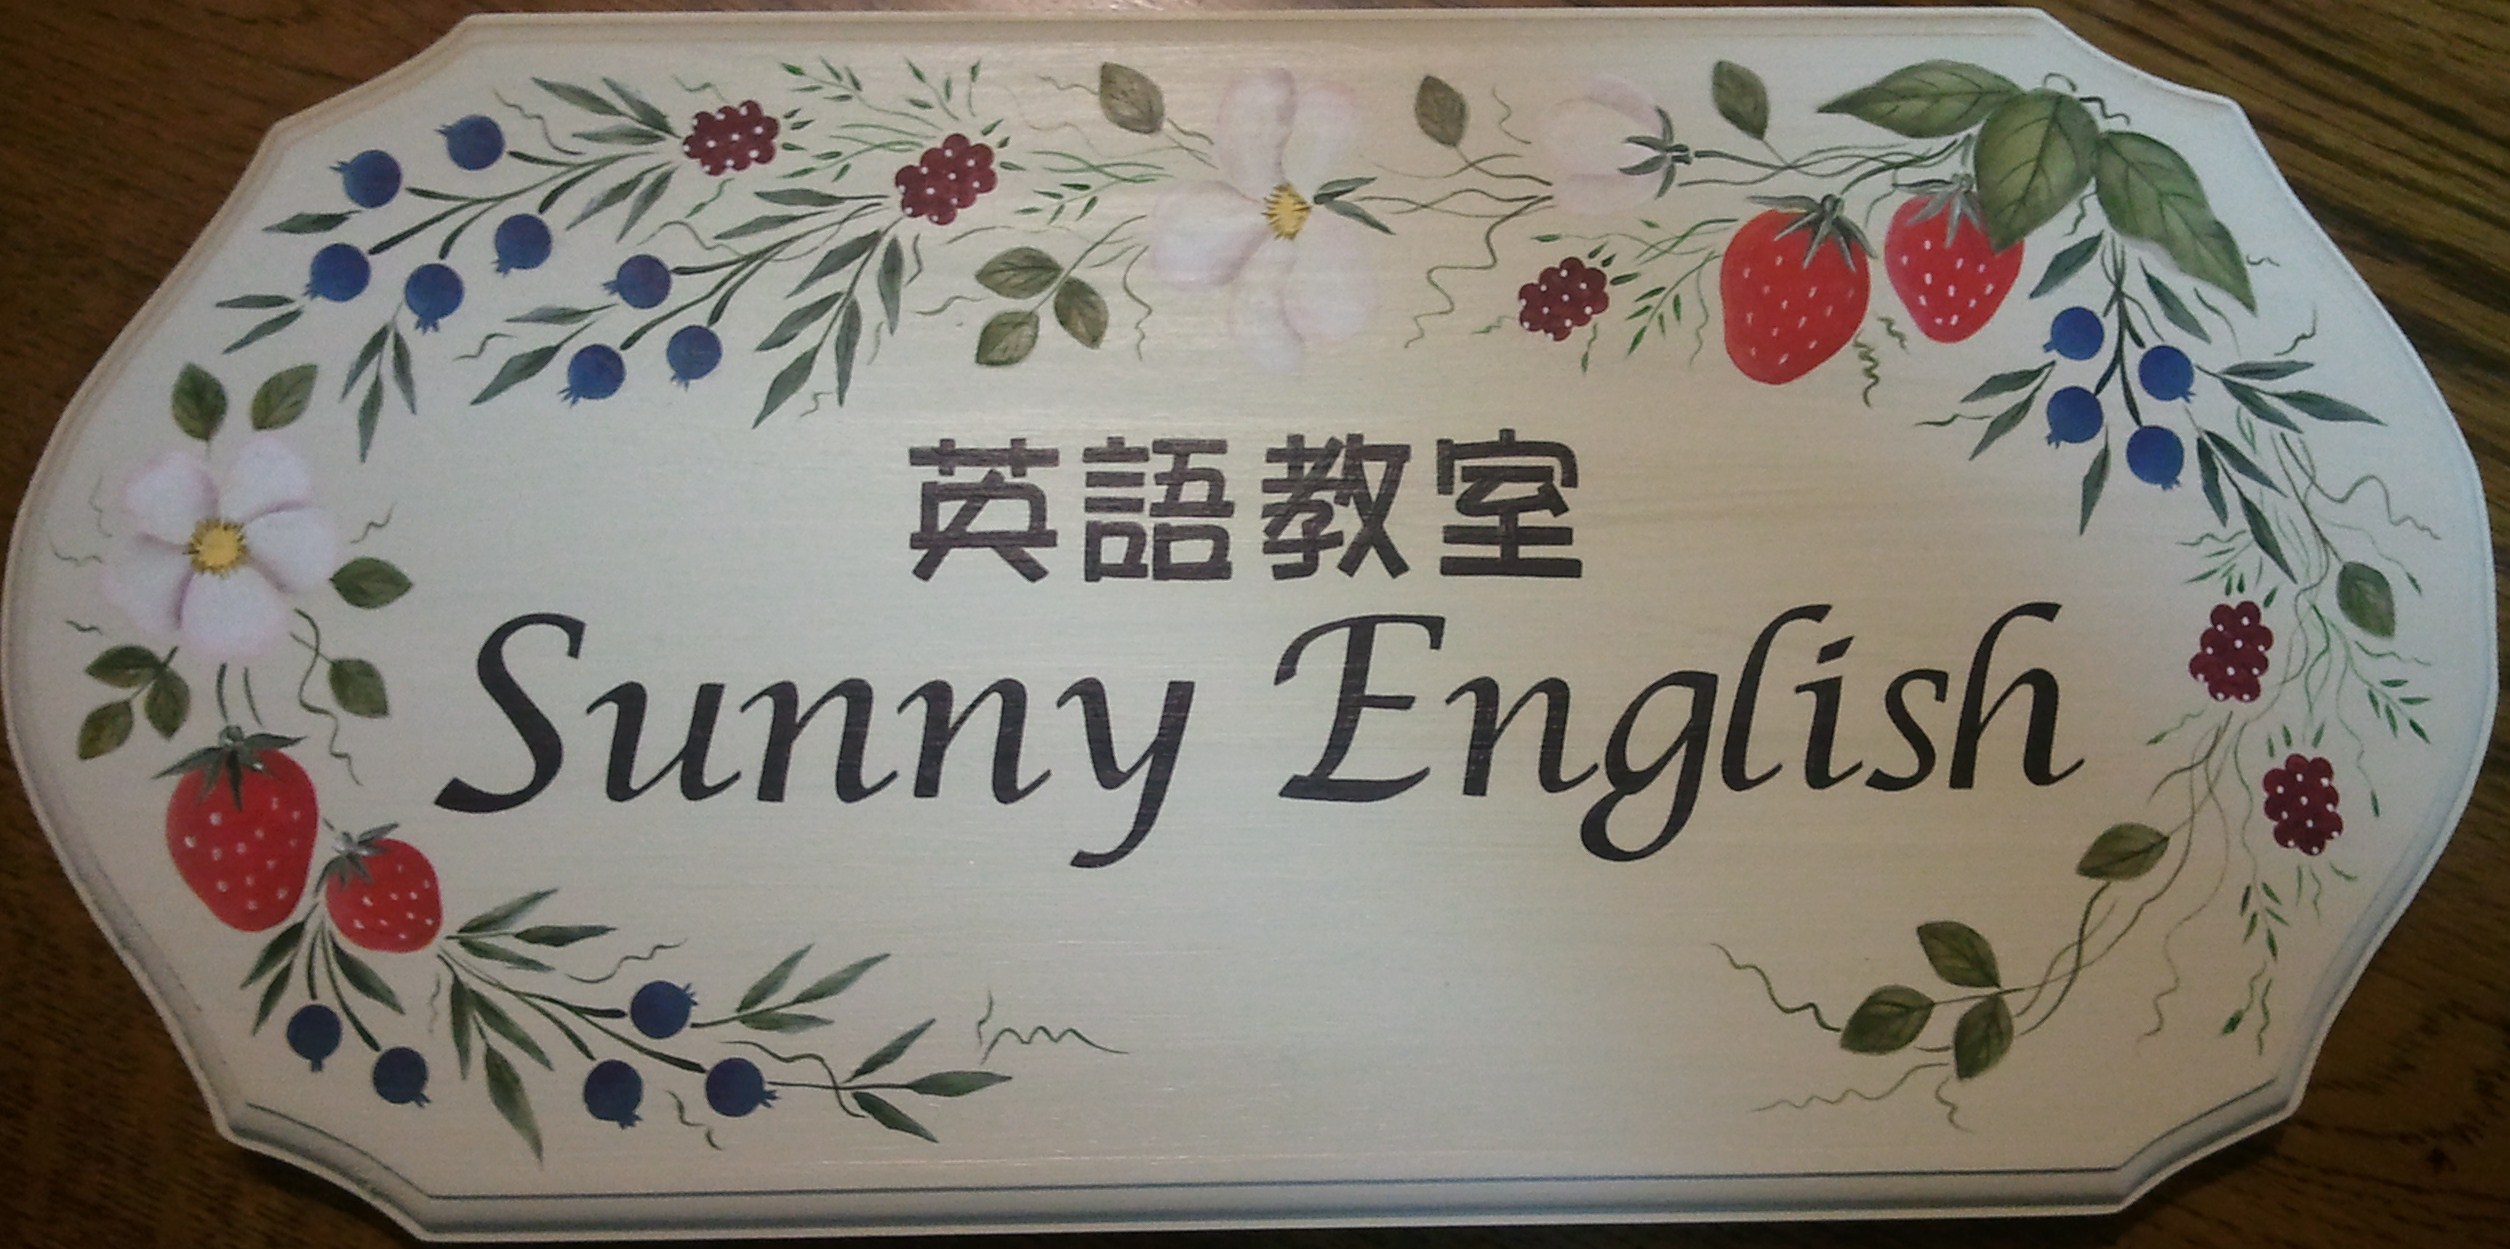 Sunny English